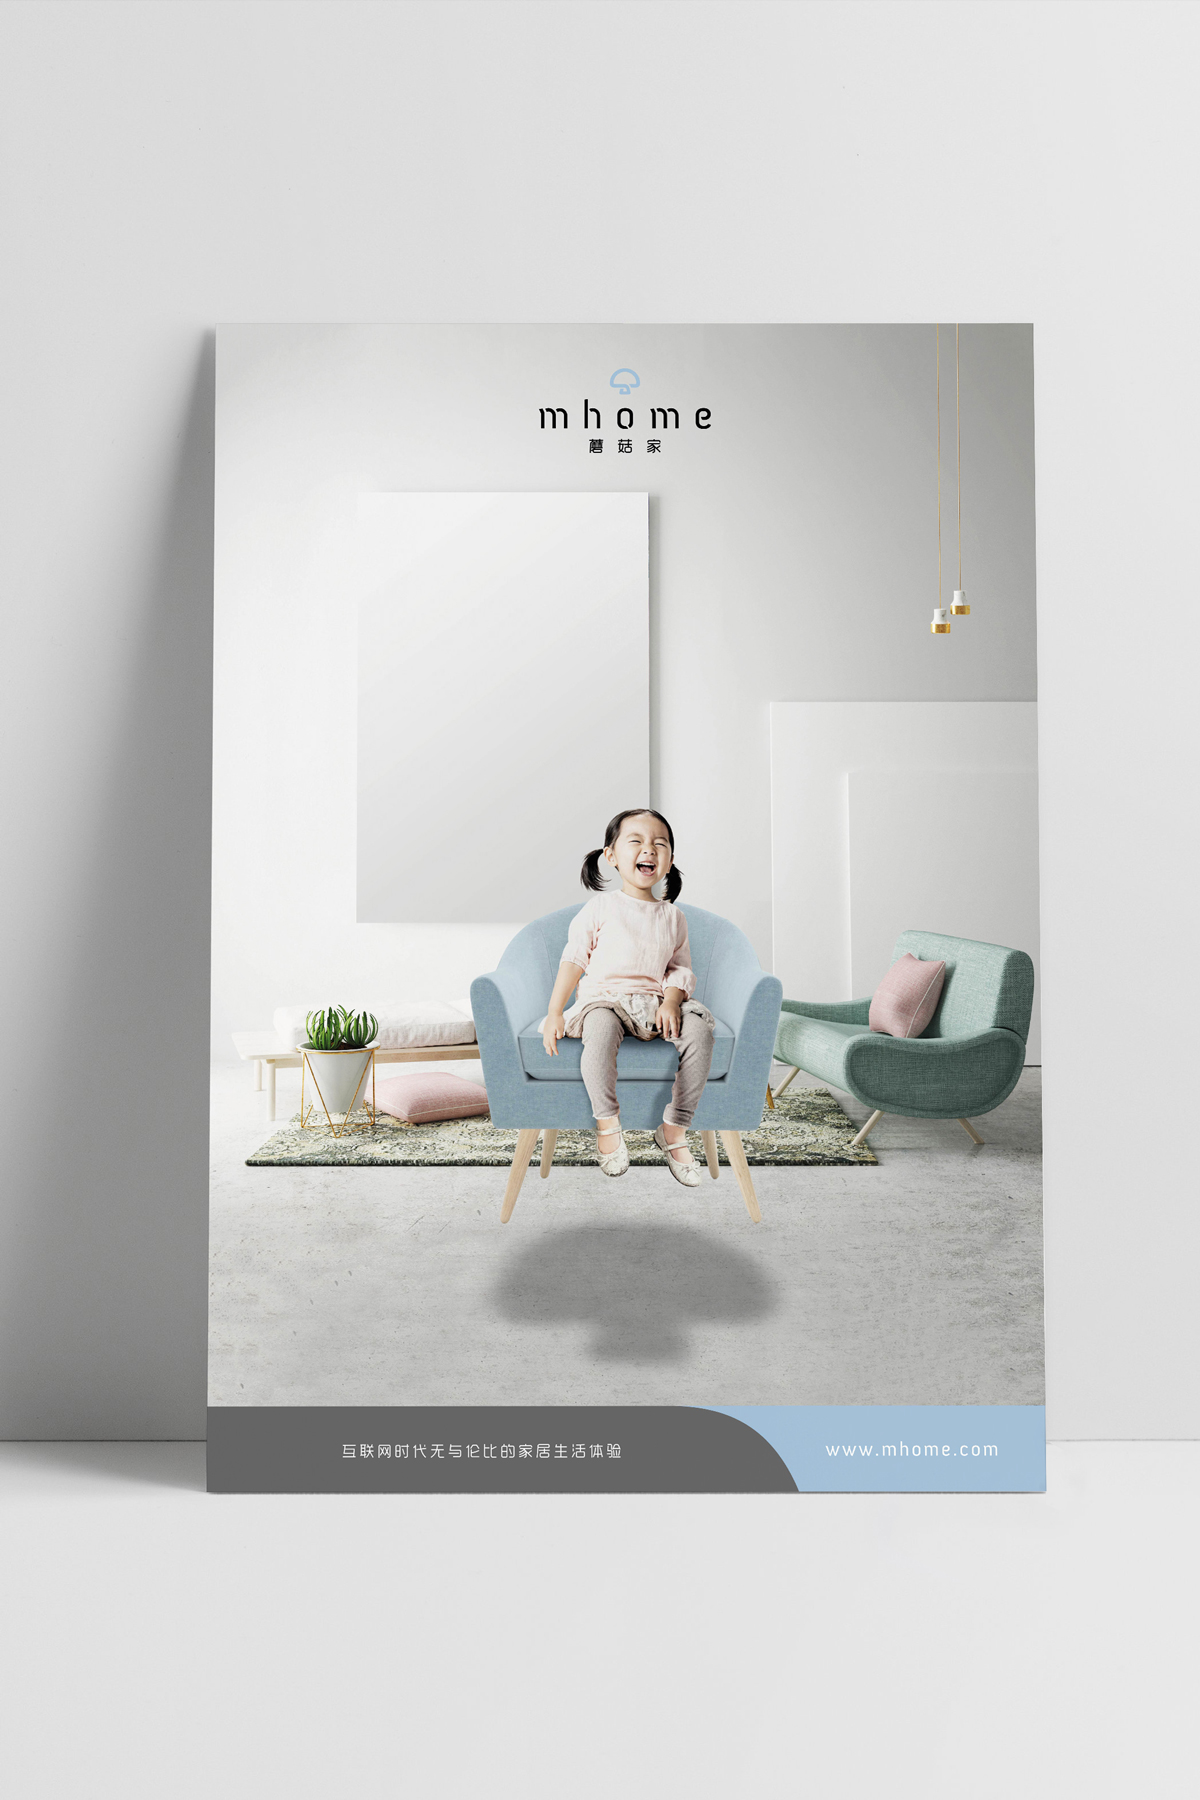 Design & Digital Marketing Portfolio - mhome Advertising Campaign and Logo Design - Leow Hou Teng